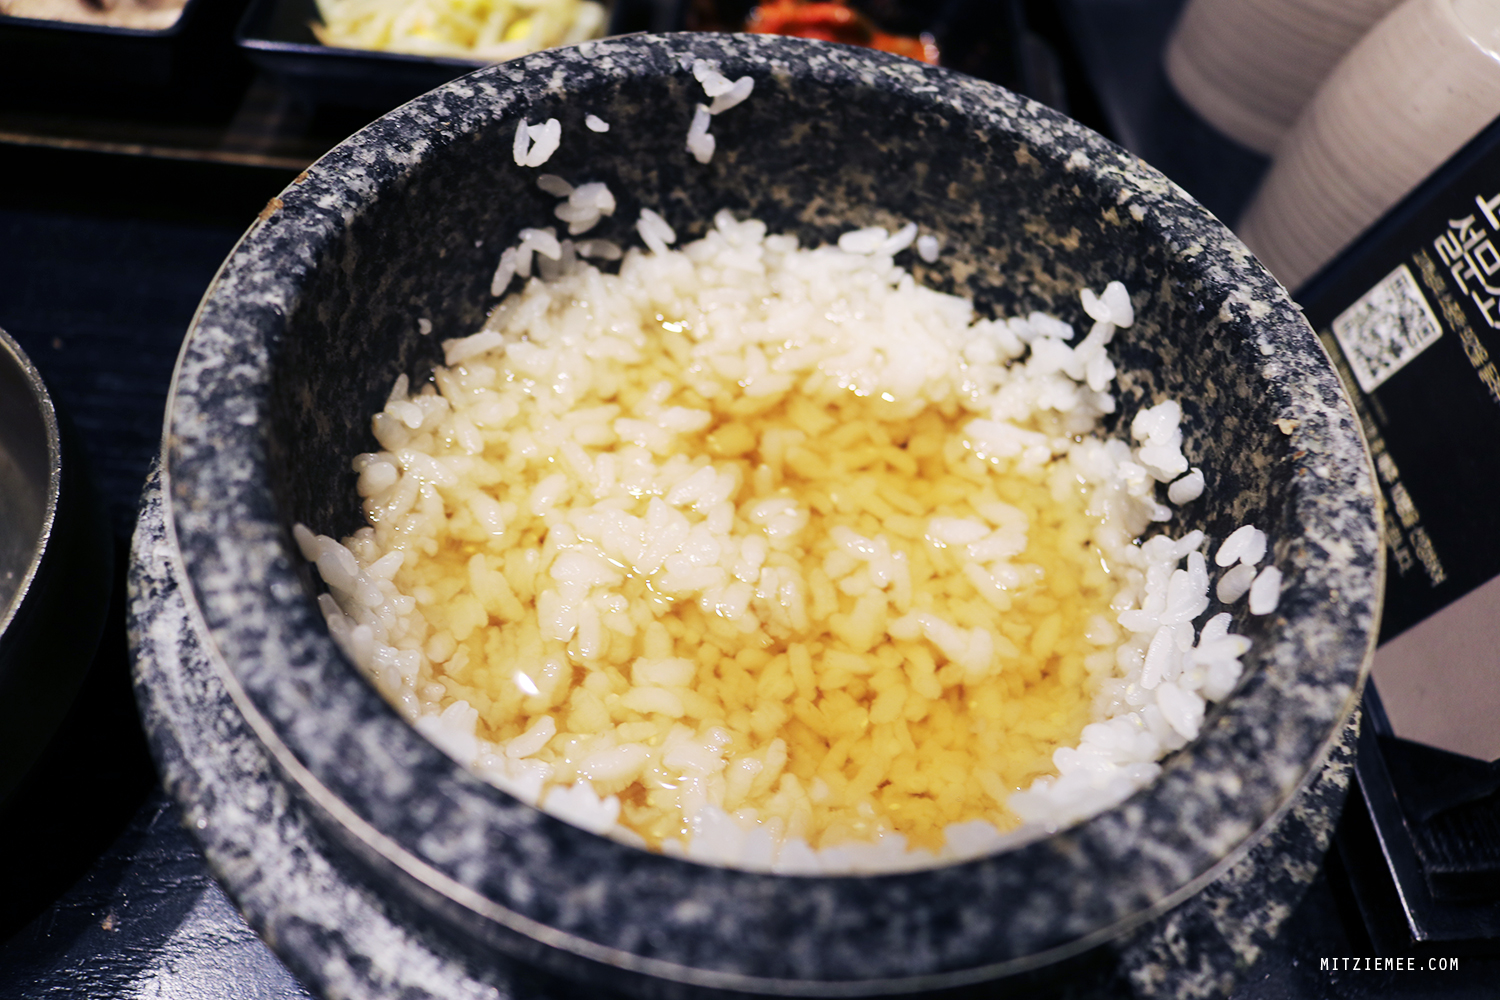 Nureun bap, scorched rice soup, Korea